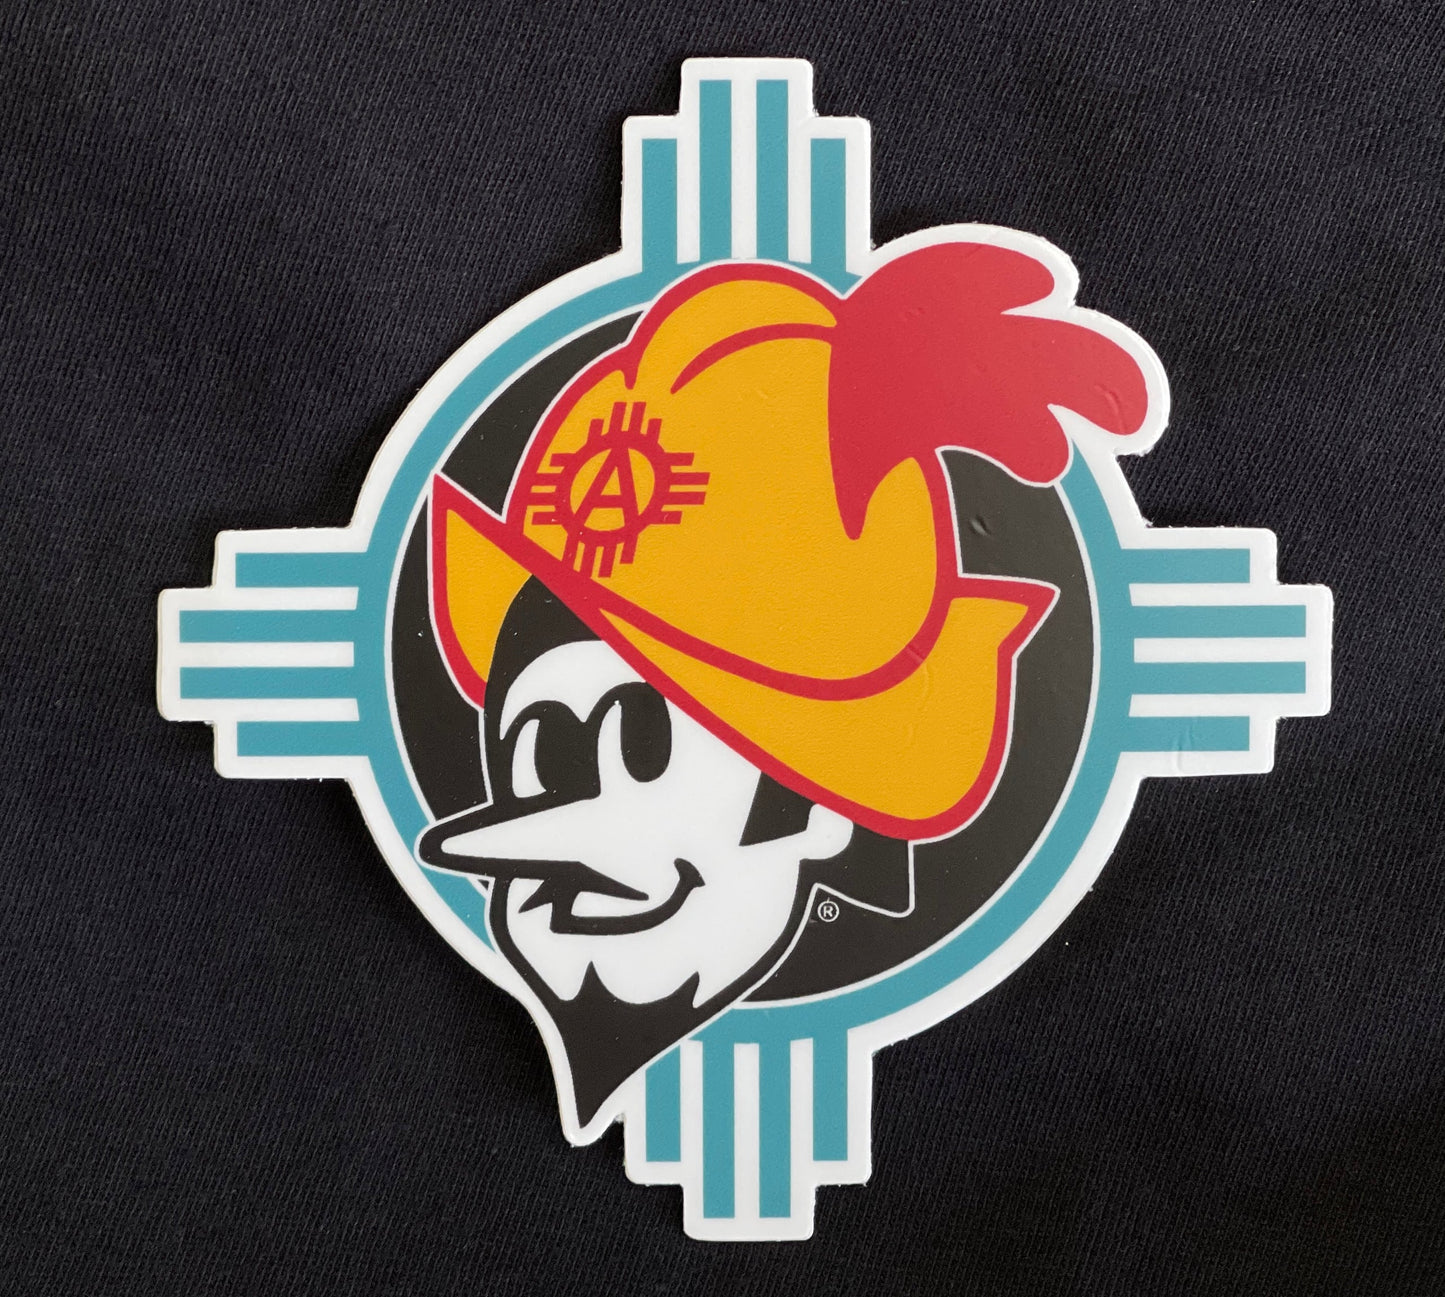 Albuquerque Dukes Stickers